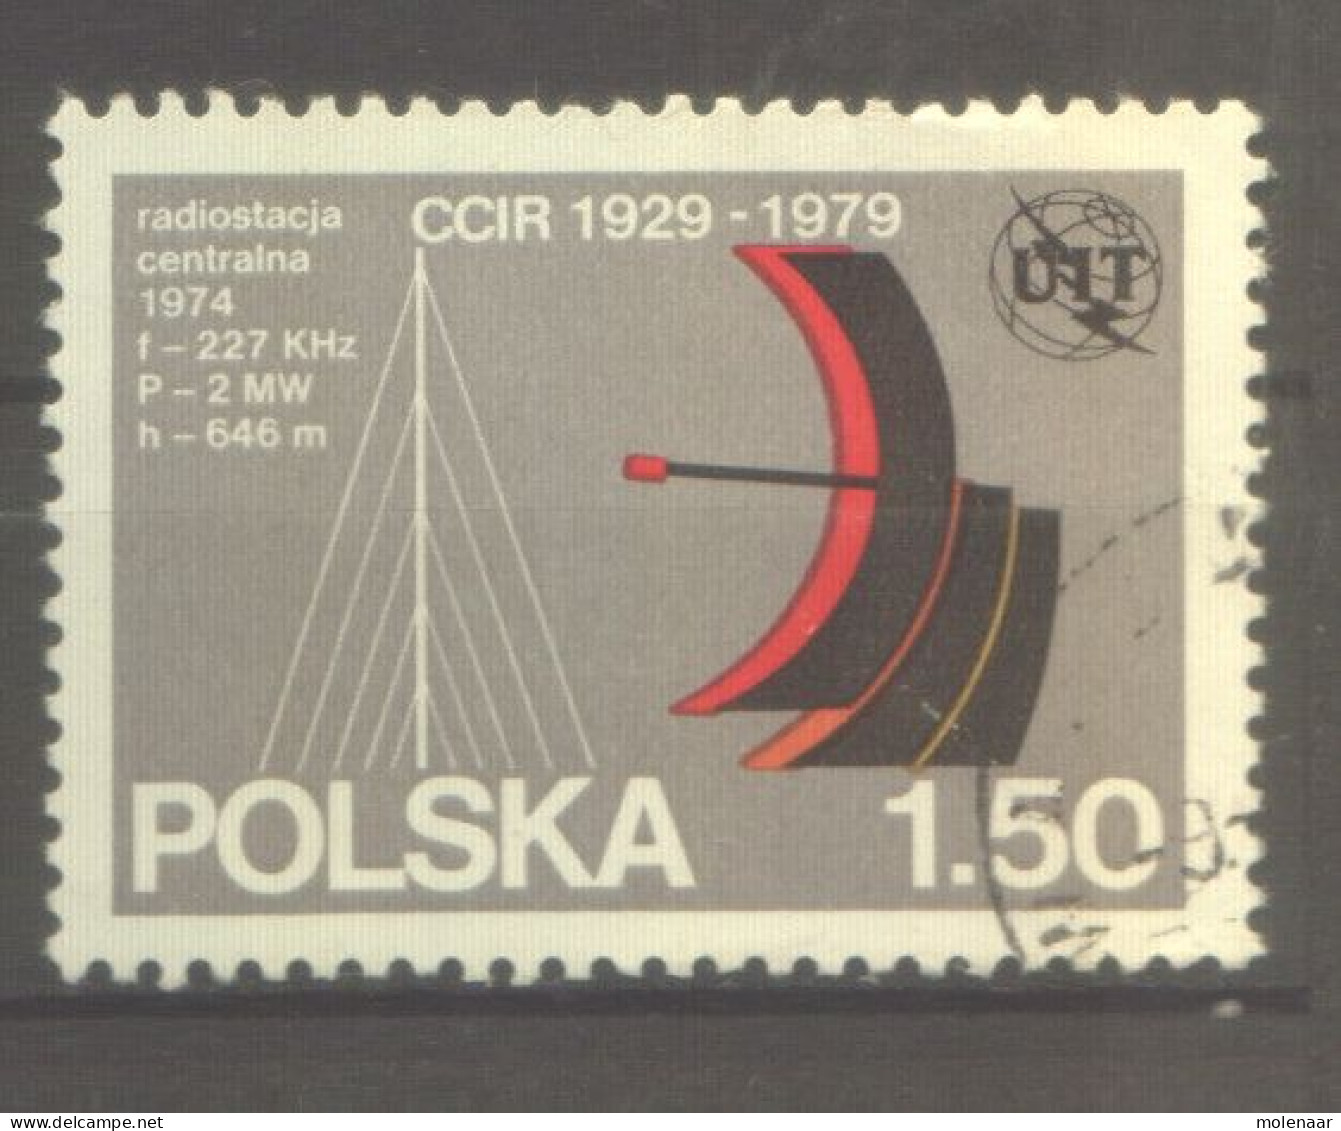 Postzegels > Europa > Polen > 1944-.... Republiek > 1971-80 > Gebruikt  2642 (12173) - Used Stamps